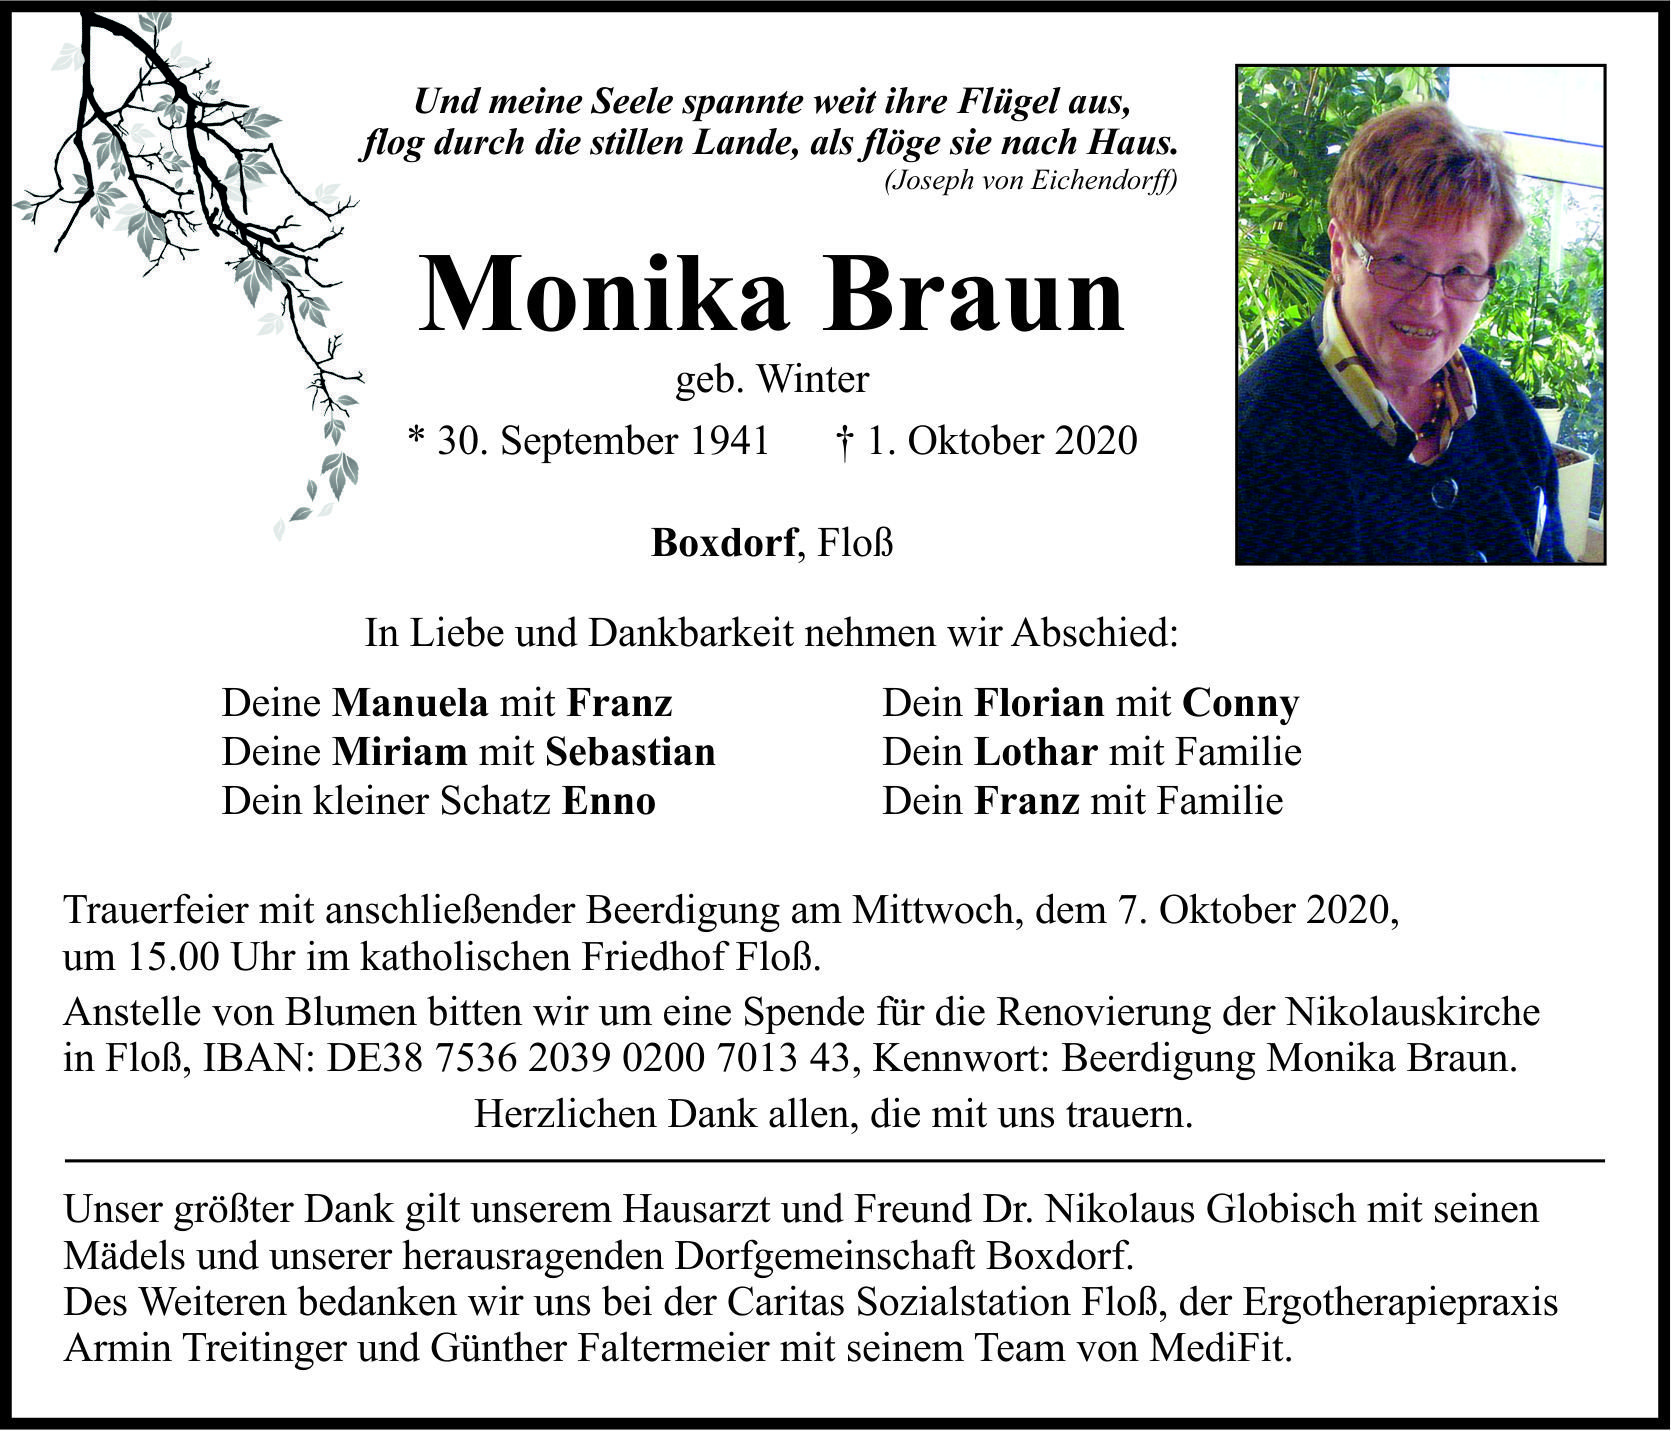 Traueranzeige Monika Braun, Boxdorf